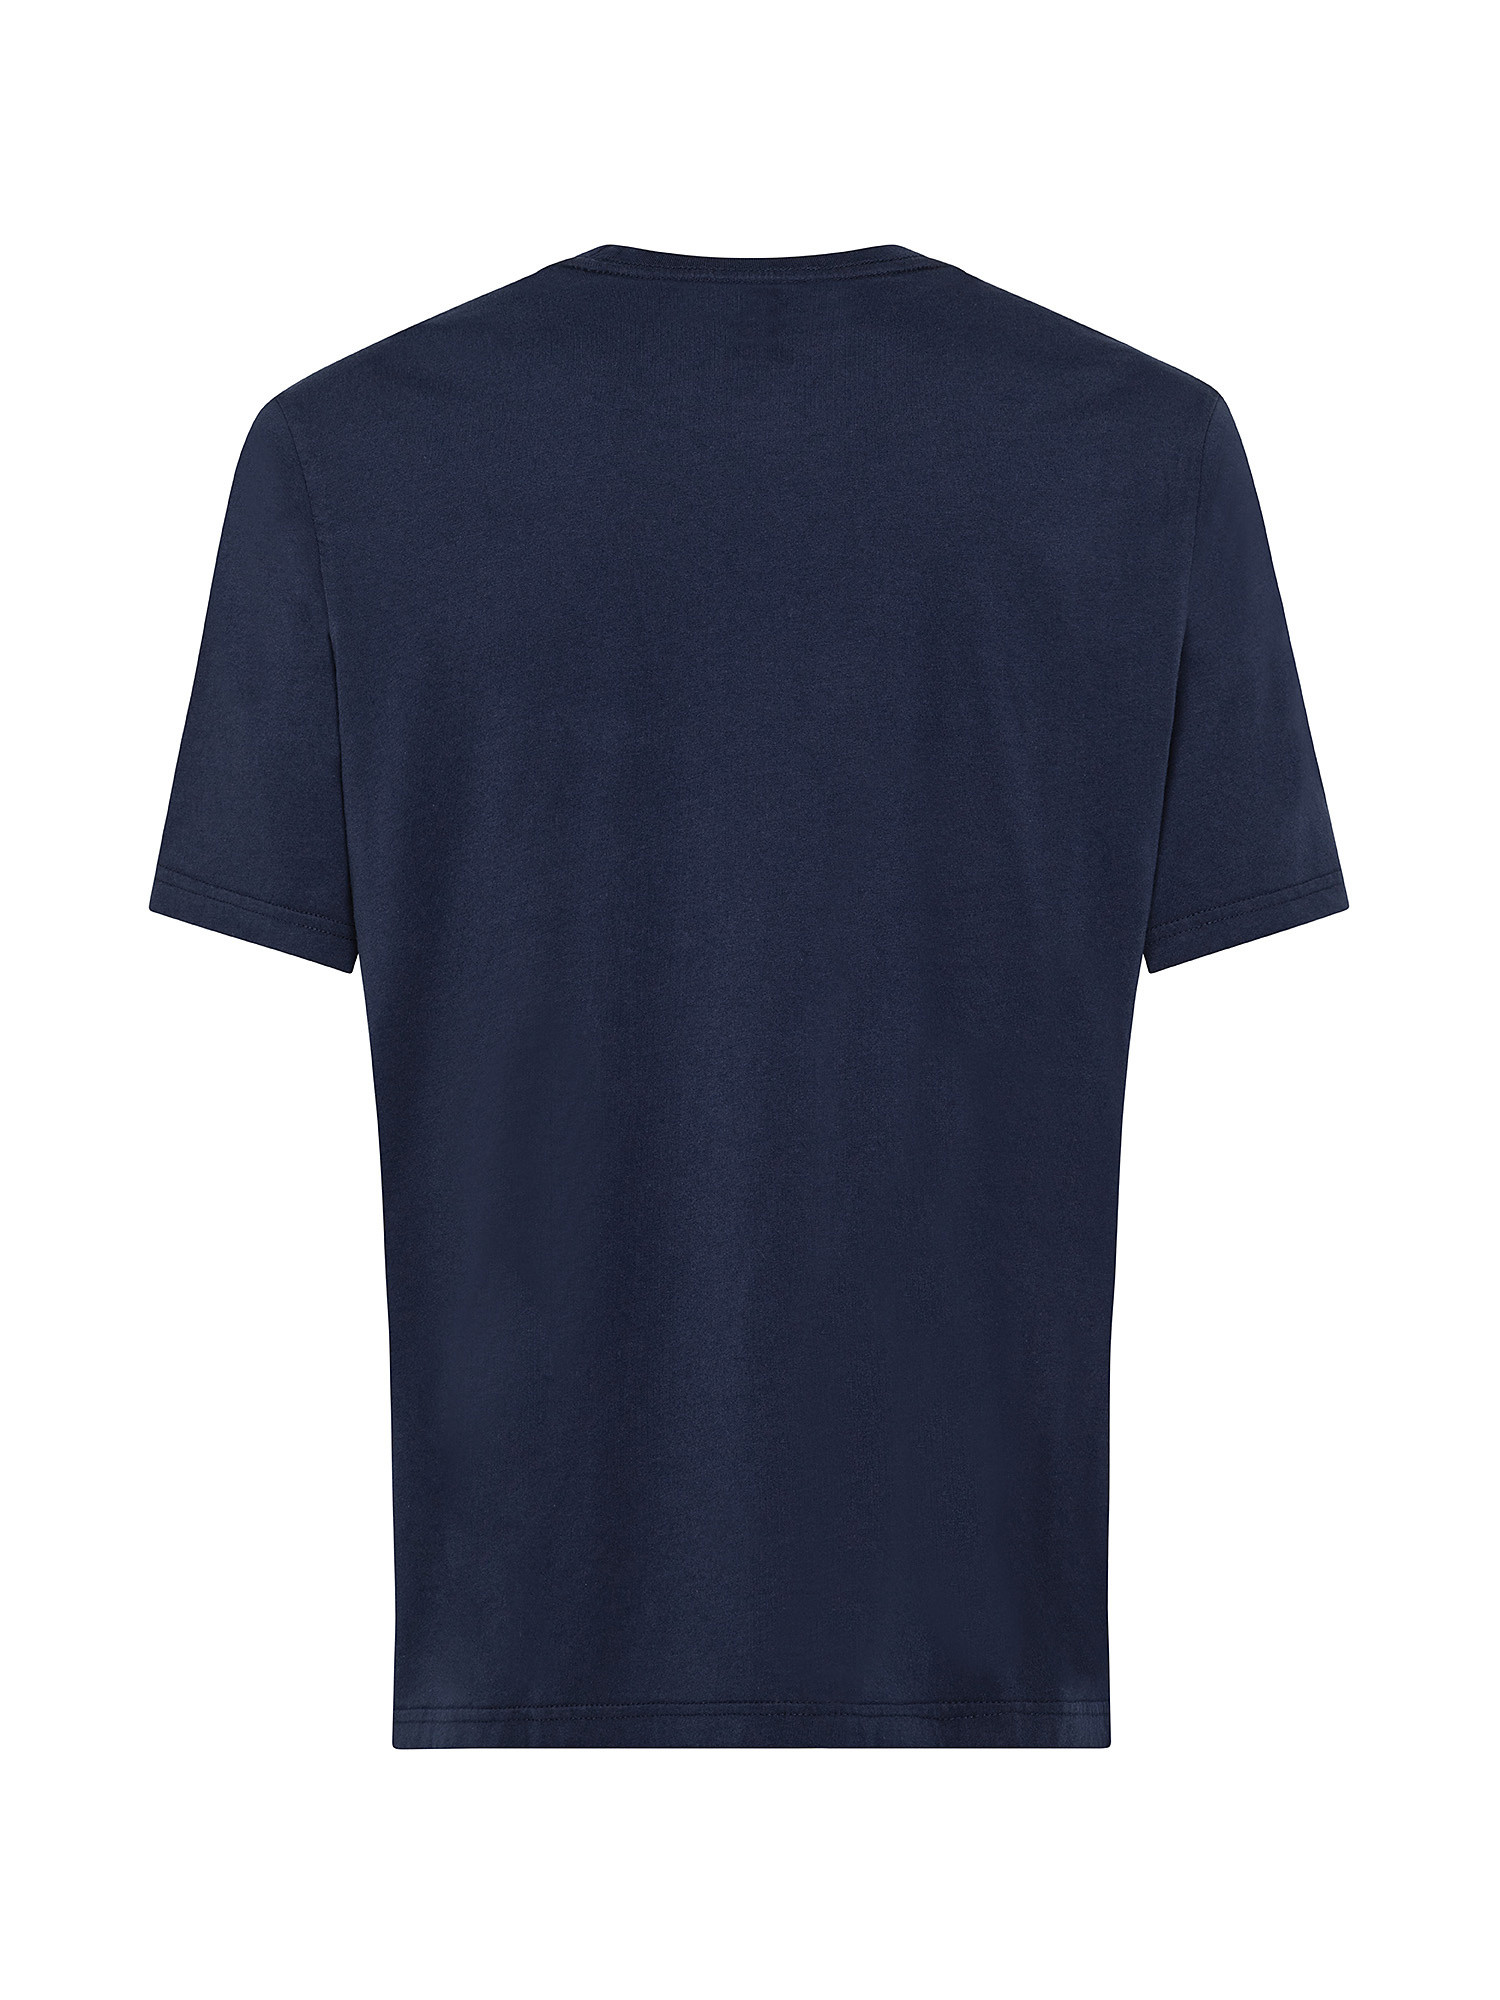 T-shirt con logo, Blu, large image number 1